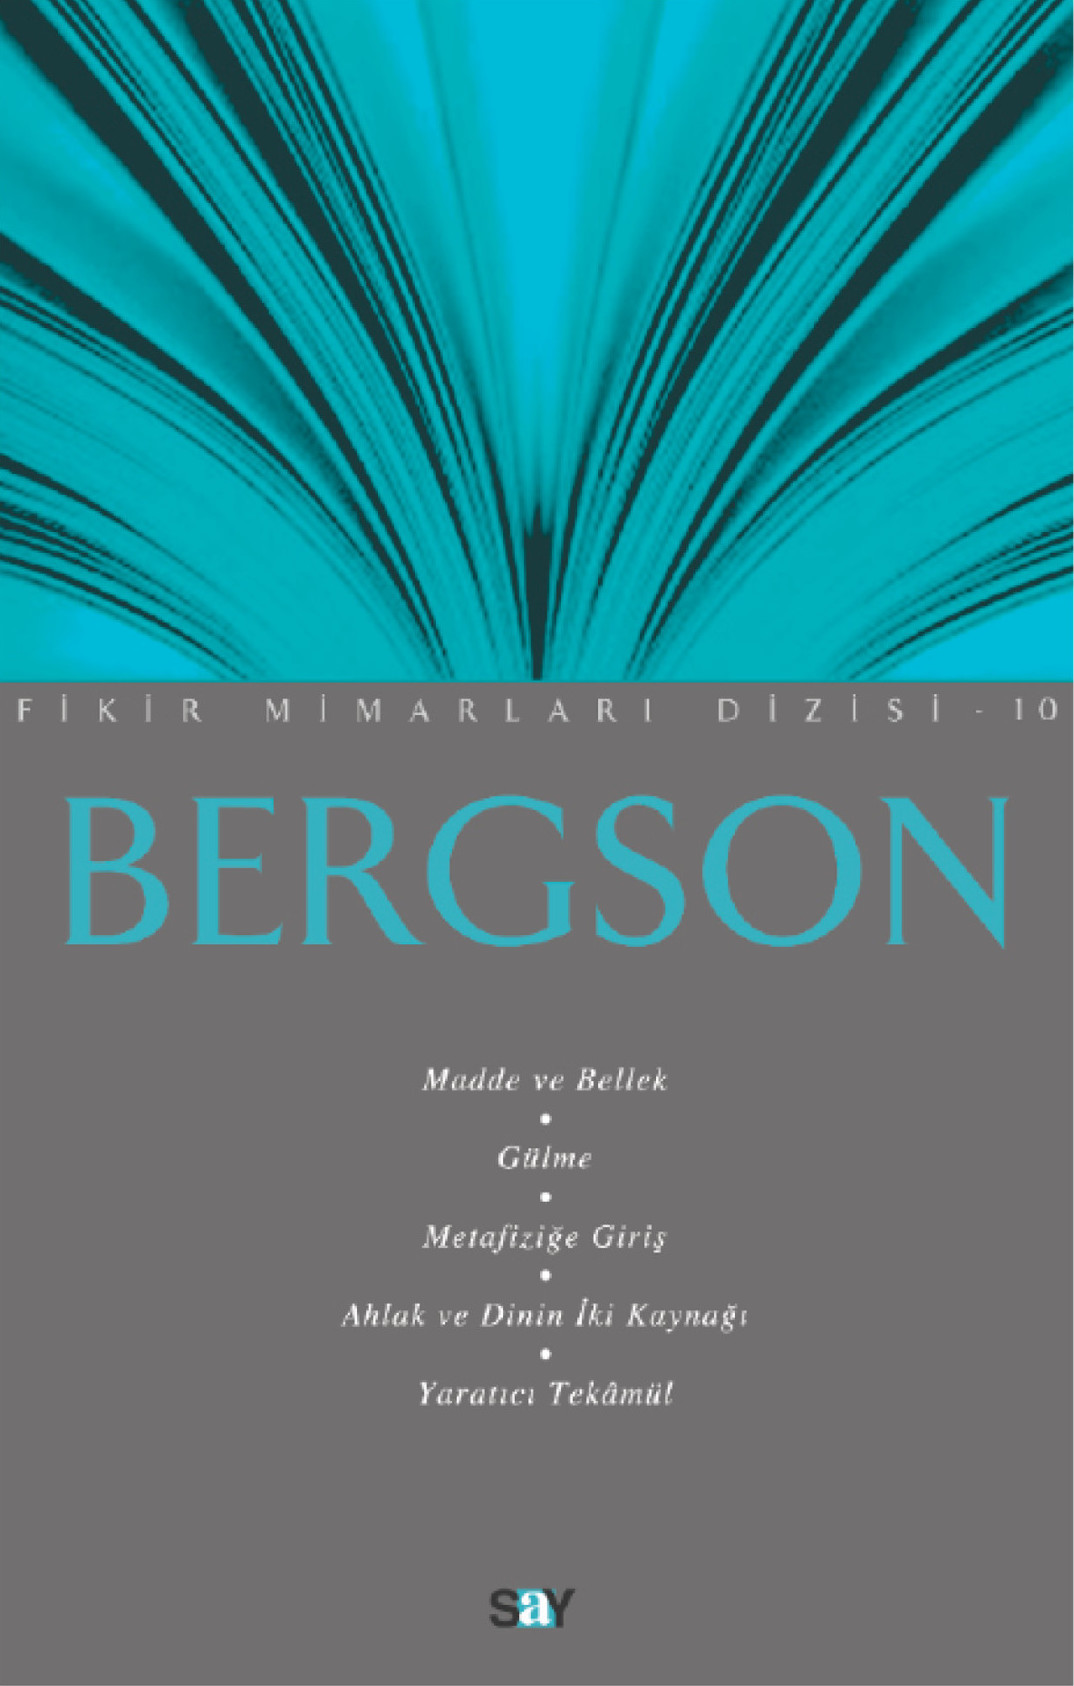 Bergson / Madde ve Bellek, Gülme, Metafiziğe Giriş, Ahlak ve Dinin İki Kaynağı, Yaratıcı Tekamül Kitap Kapağı